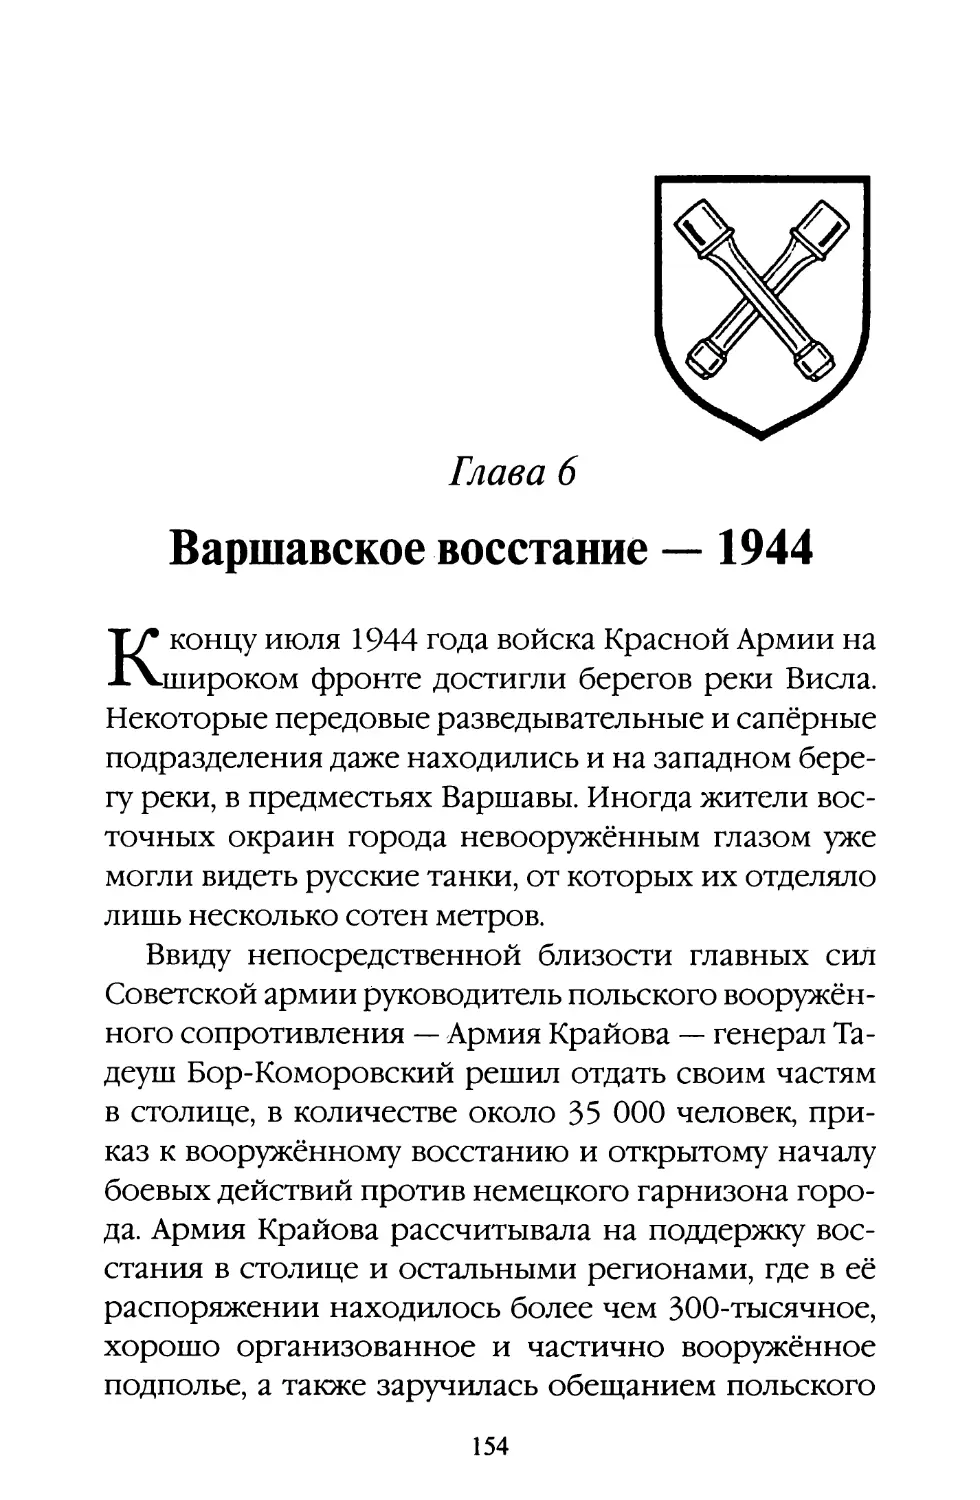 Глава 6. Варшавское восстание — 1944